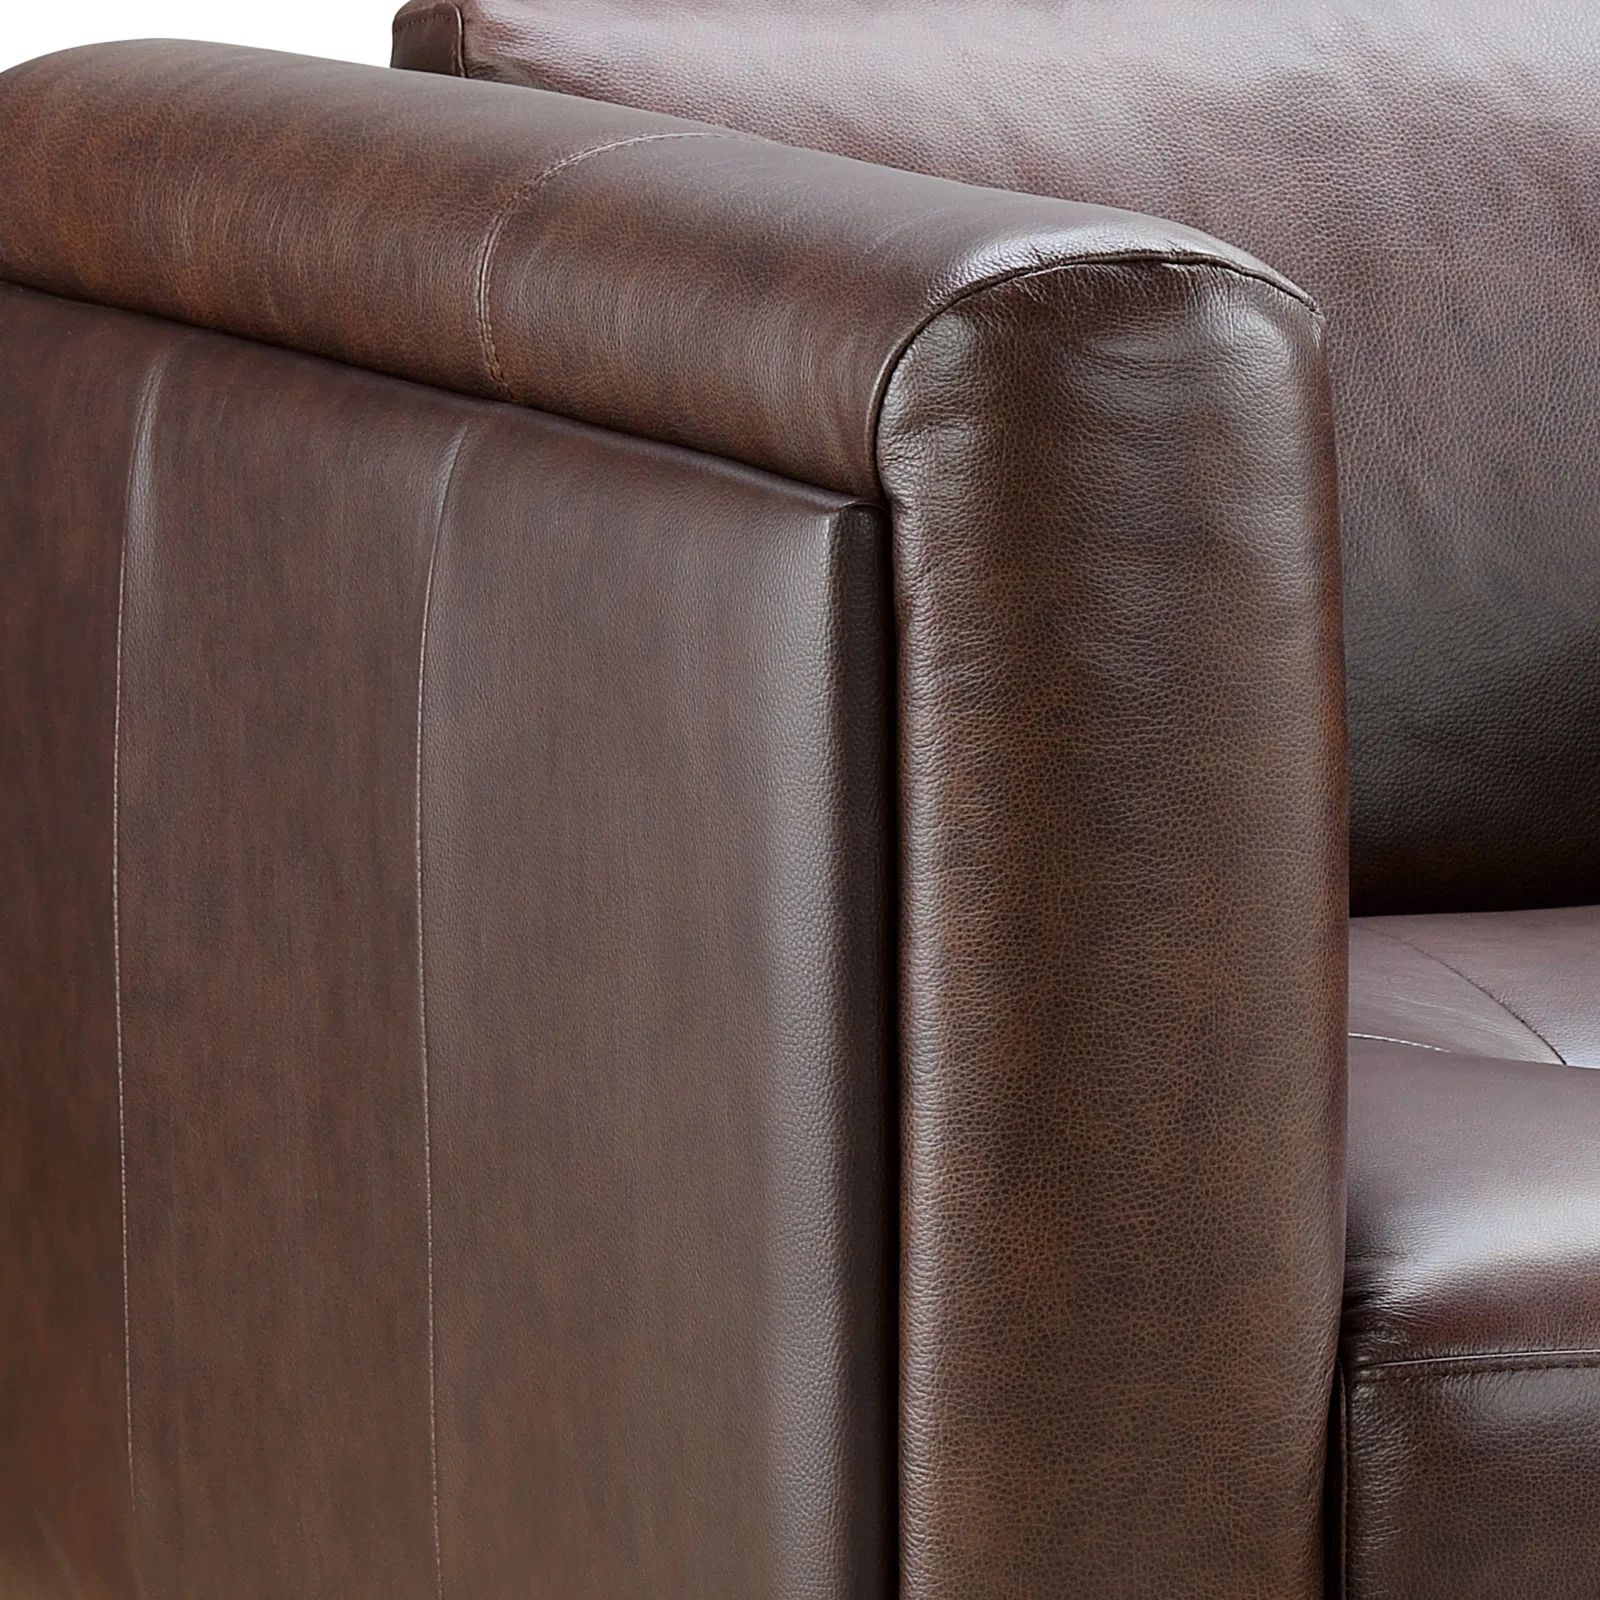  Ghế sofa băng da công nghiệp BT180 Foxcon dài 2m2 sang trọng 